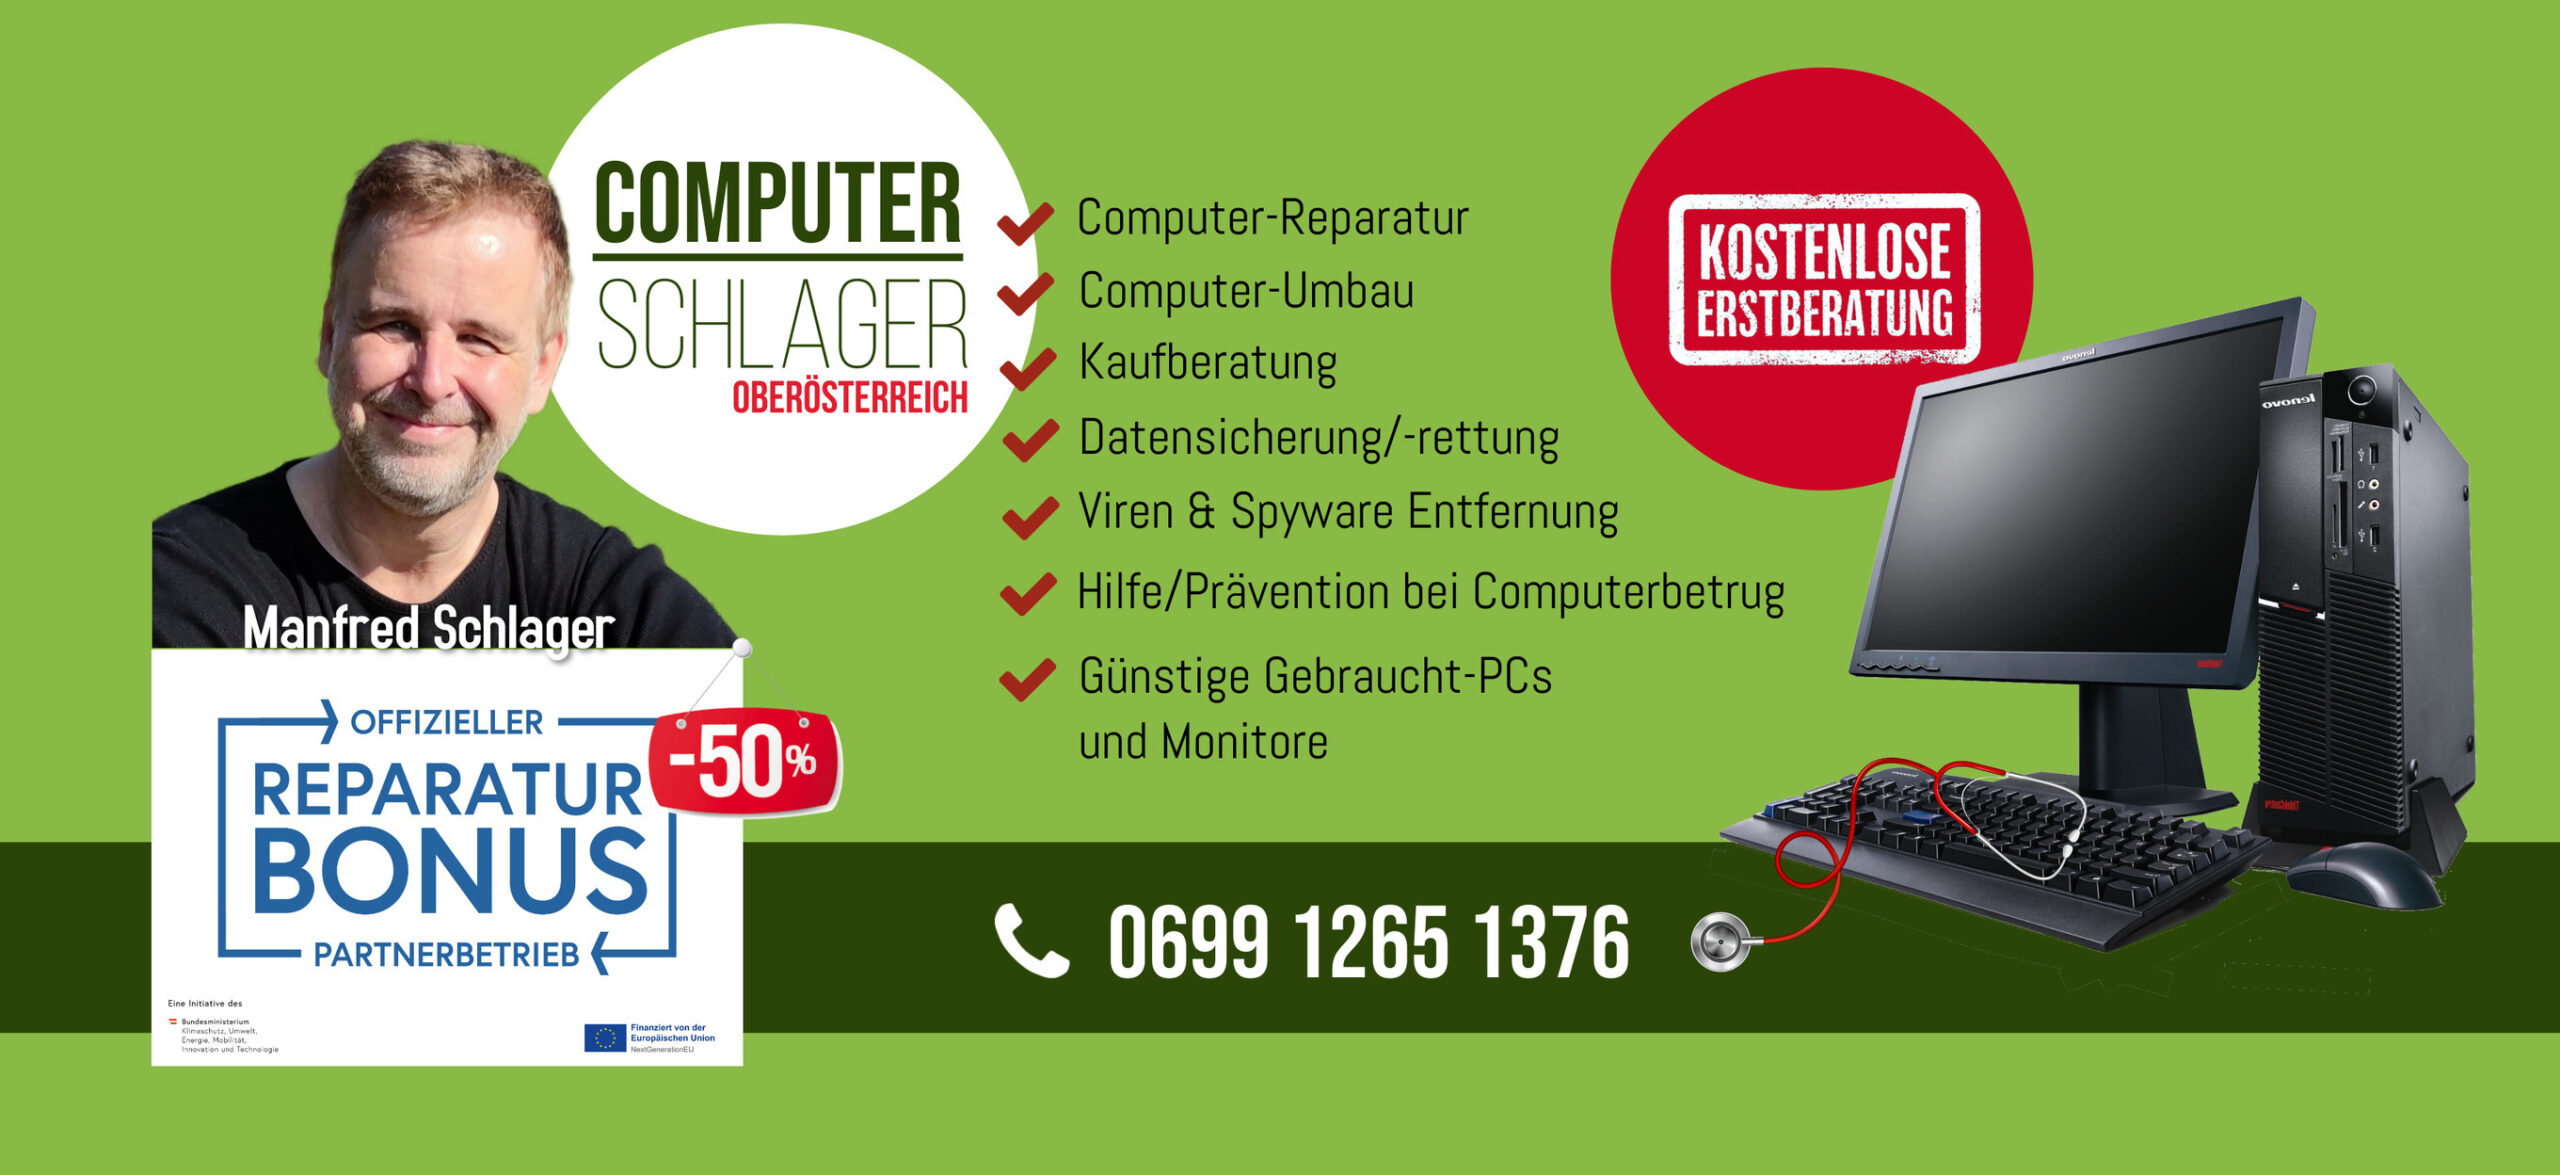 Computer Schlager Oberösterreich Reparaturbonus Partnerbetrieb